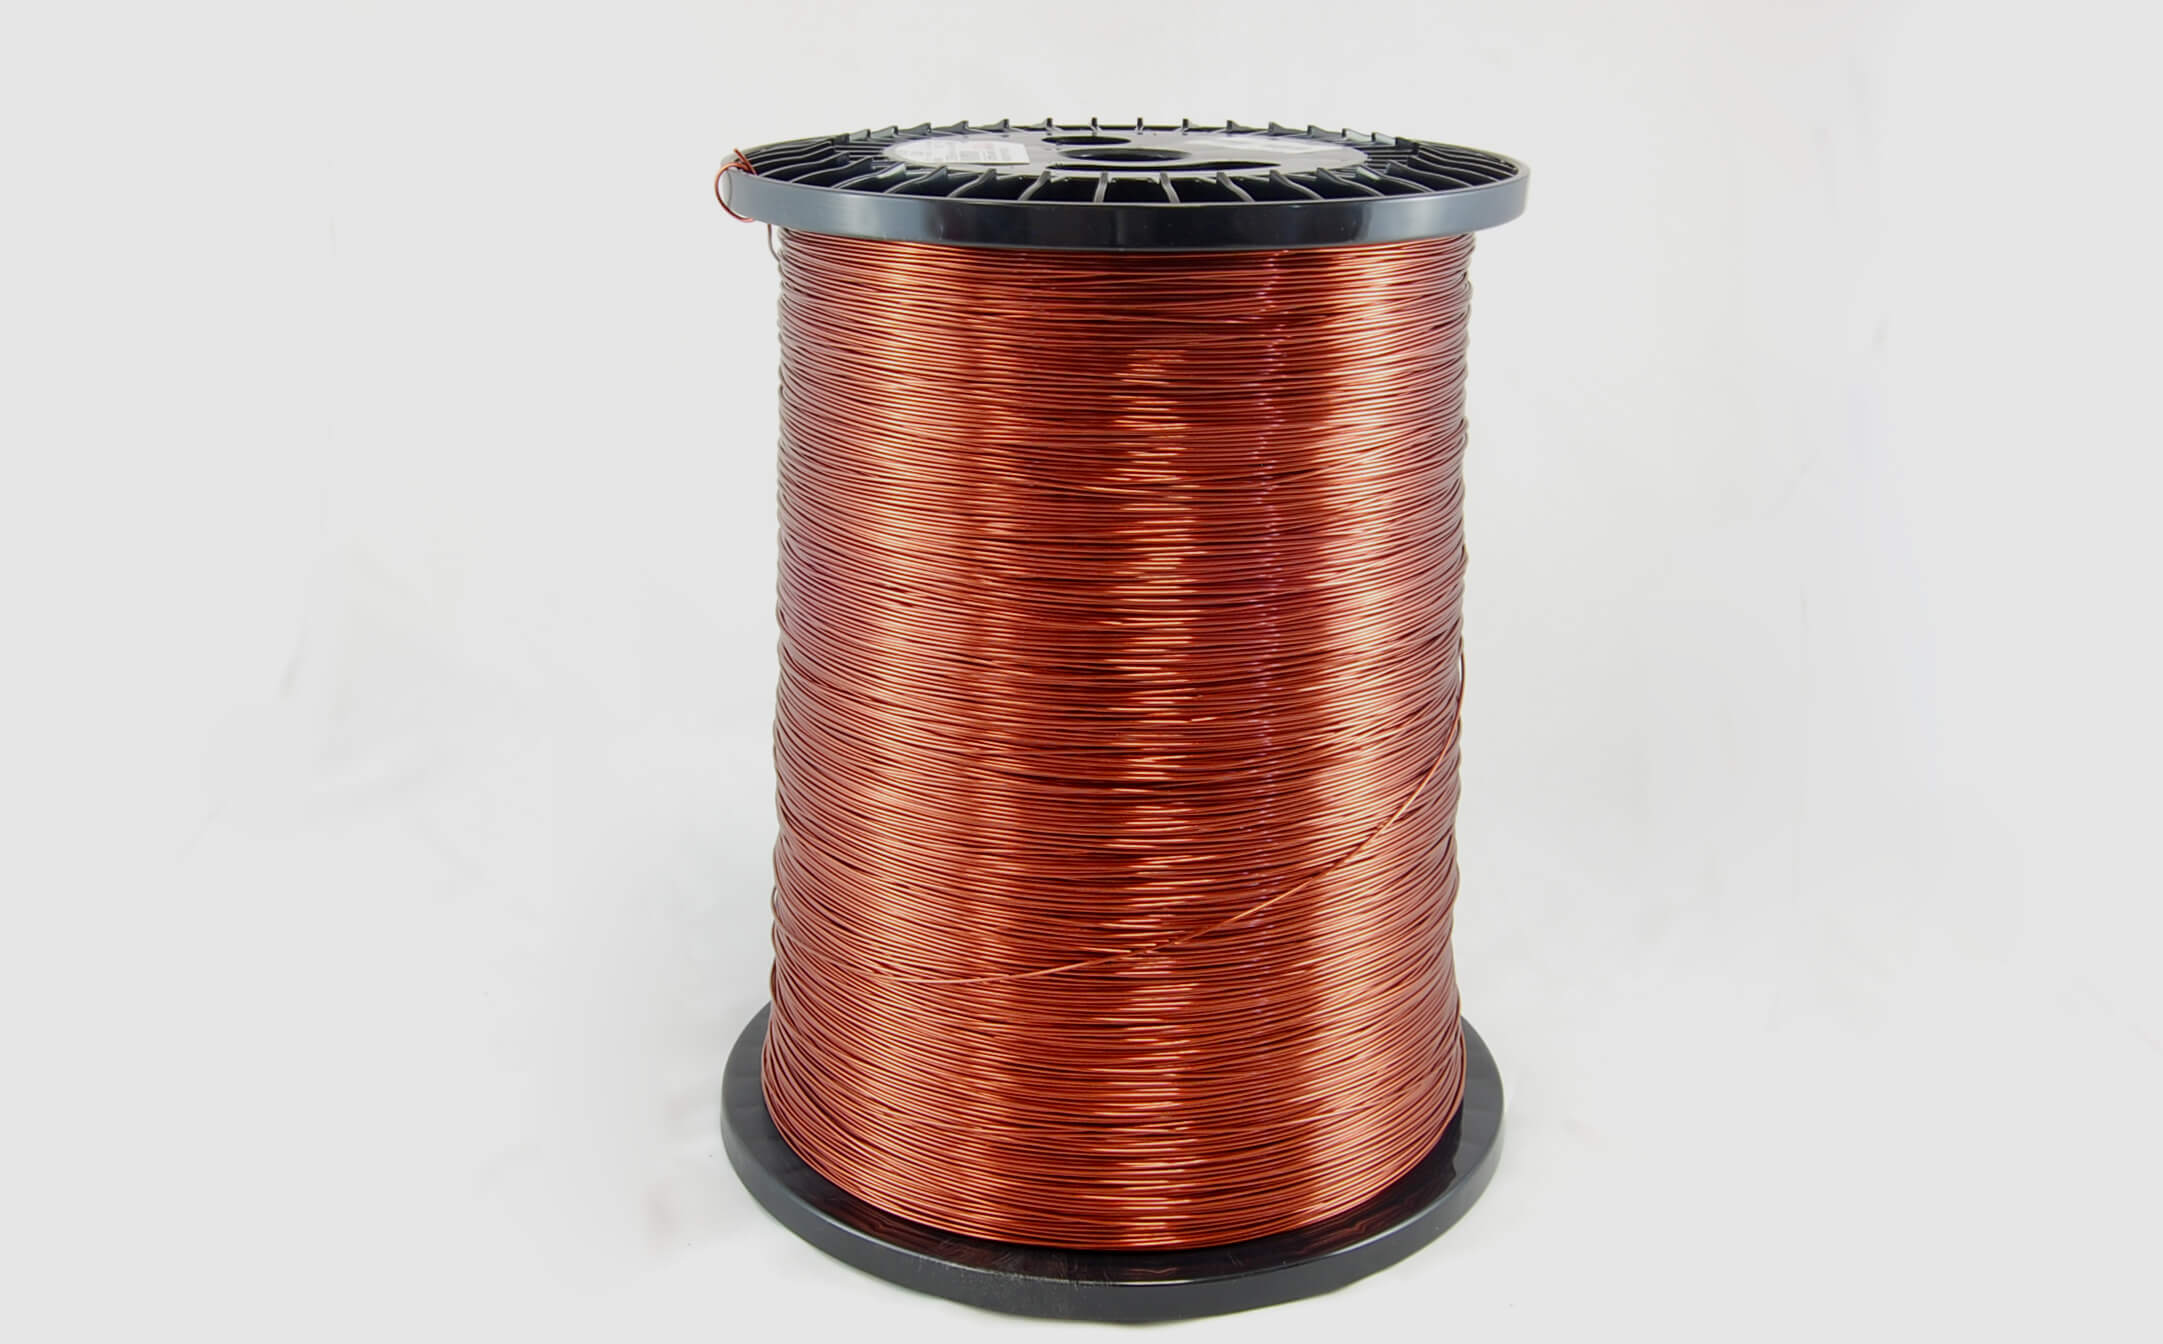 #23 Heavy Super Hyslik 200 Round HTAIH MW 35 Copper Magnet Wire 200°C, copper, 85 LB pail (average wght.)